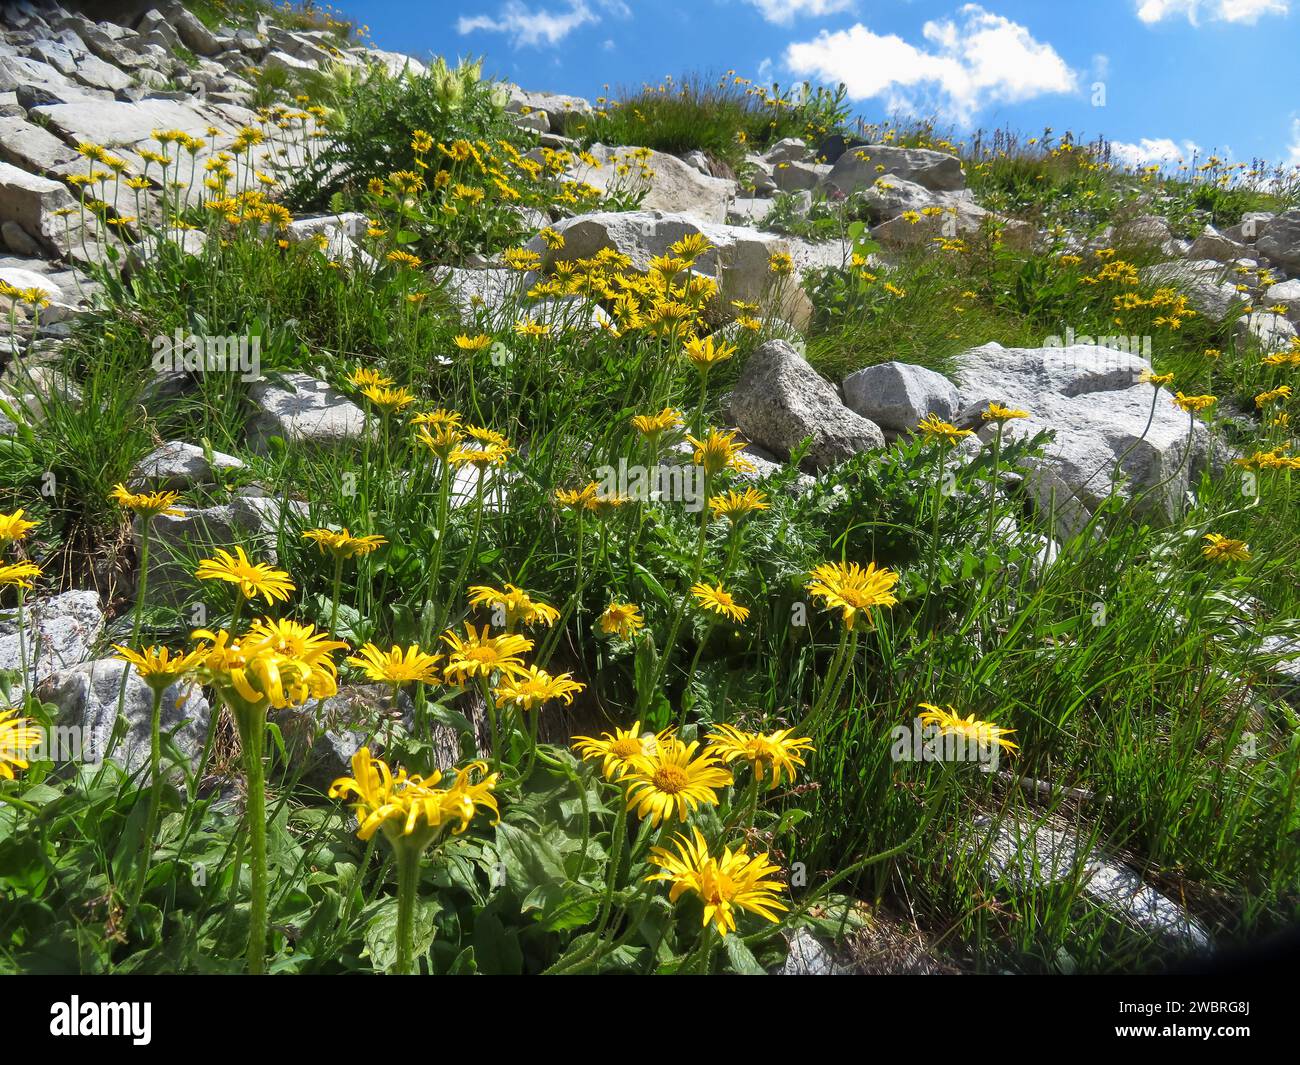 Switserland, Arnica montana doronicum grandiflorum in the Swiss alps. Stock Photo